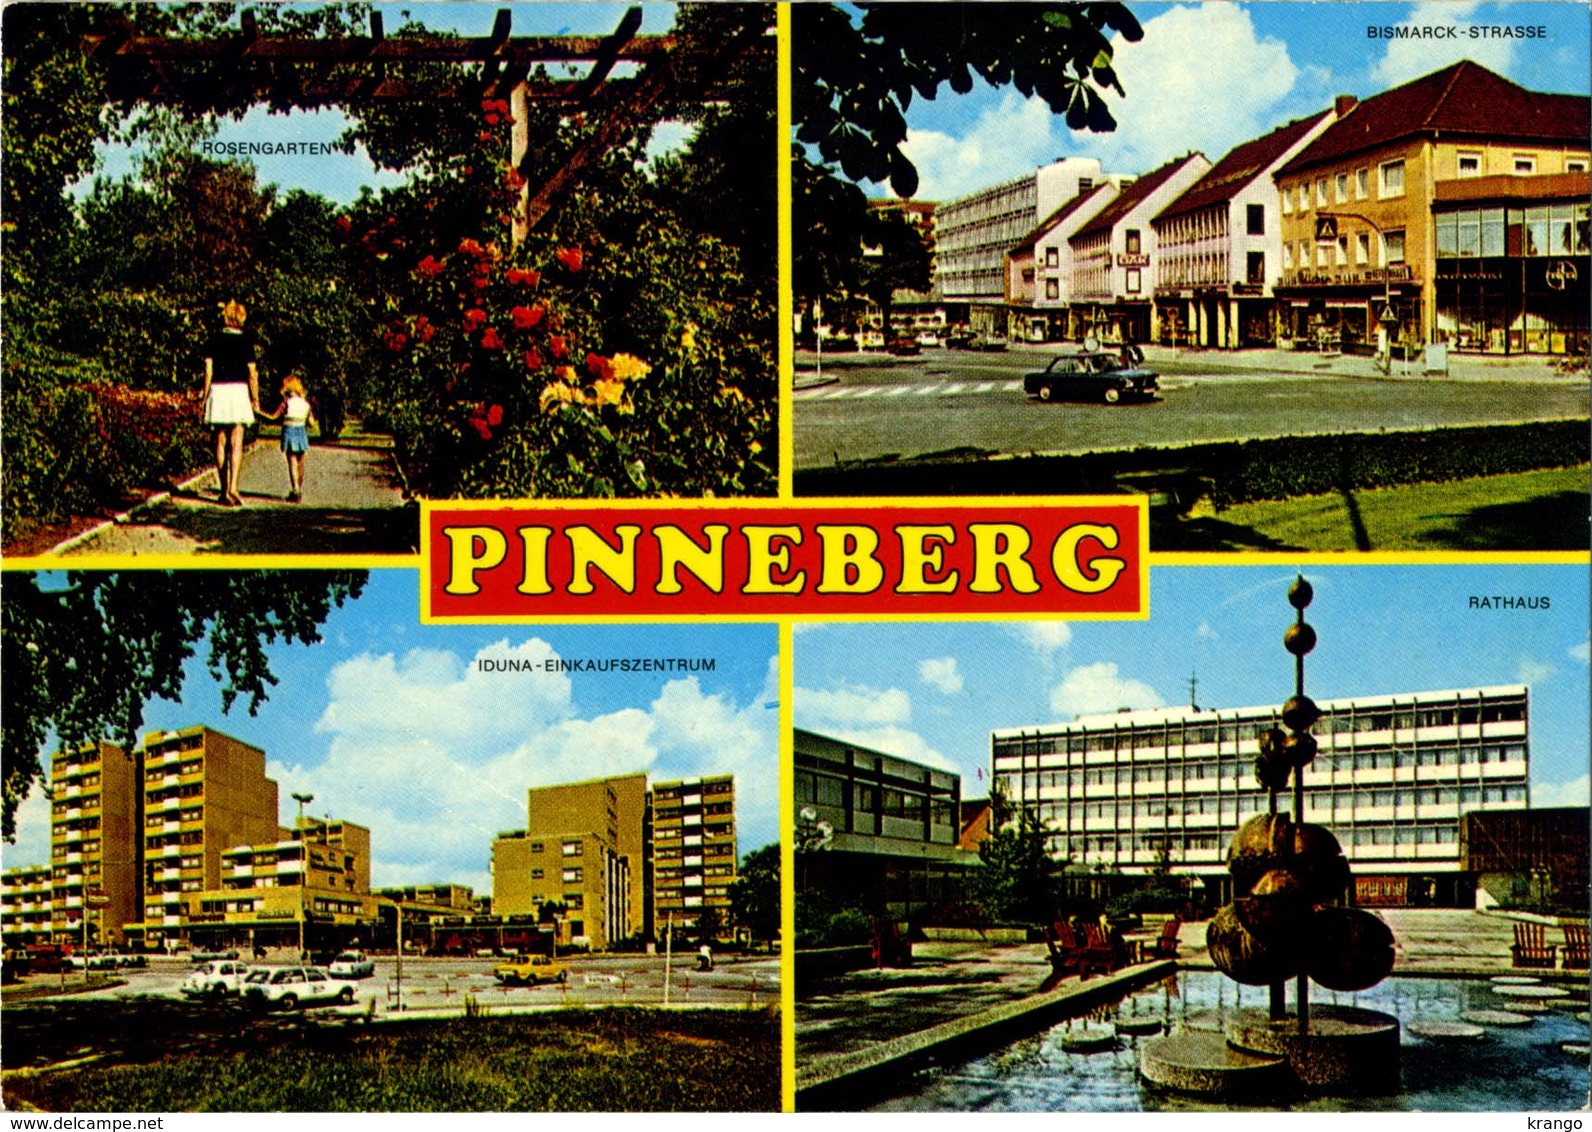 Germany (Deutschland) - Pinneberg (Schleswig-Holstein) - Rosengarten, Bismarck Strasse, Iduna, Rathaus - Pinneberg